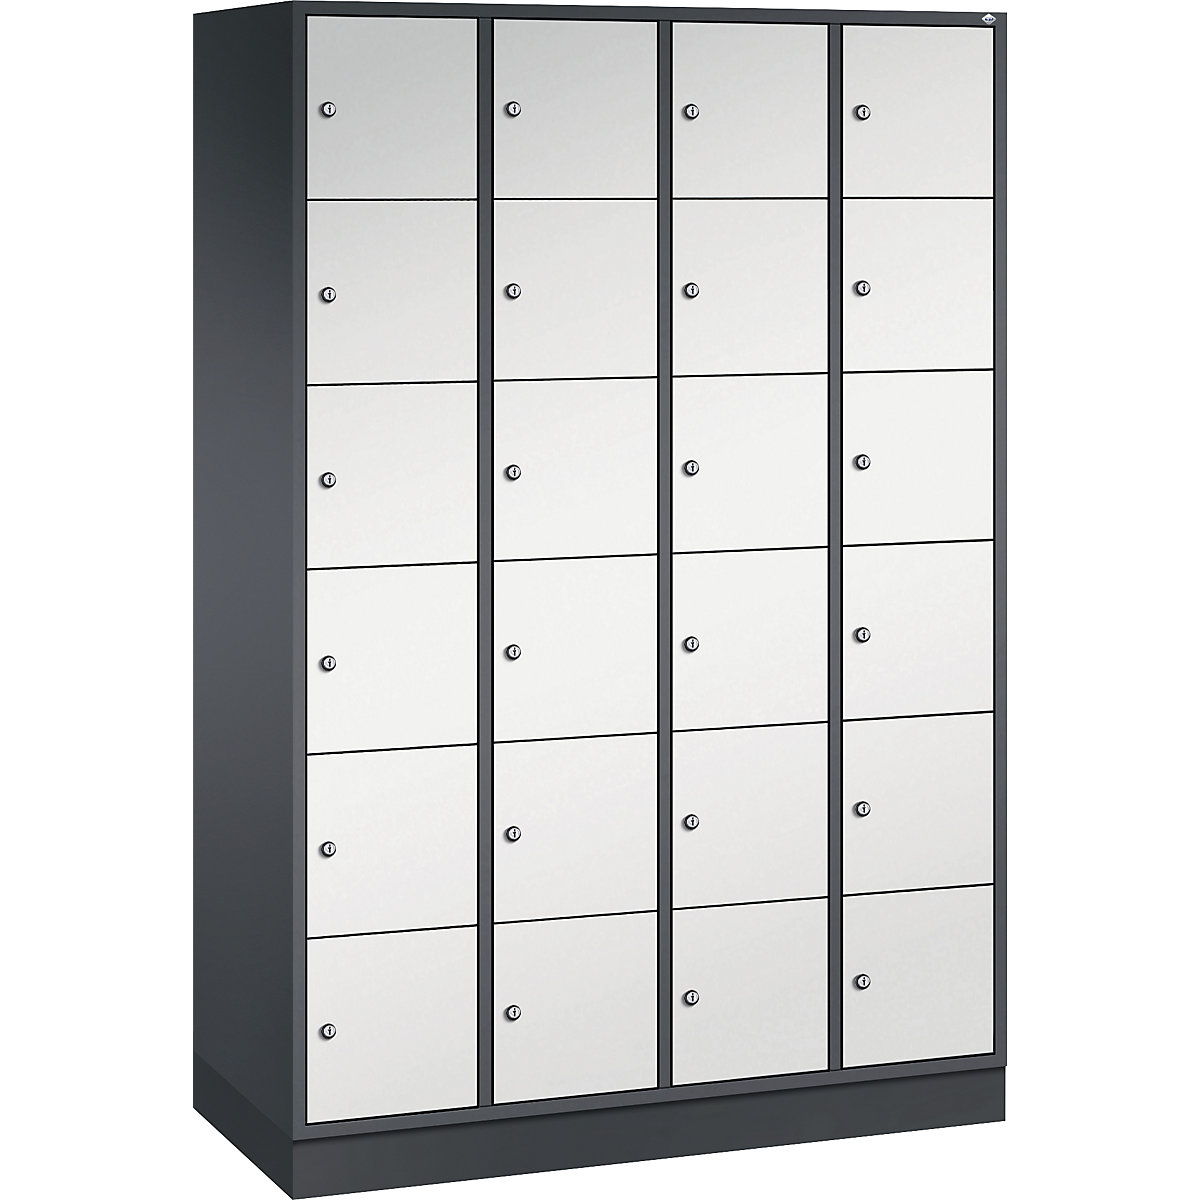 Vestiaire multicases en acier INTRO, casiers hauteur 285 mm – C+P, l x p 1220 x 500 mm, 24 casiers, corps gris noir, portes gris clair-8